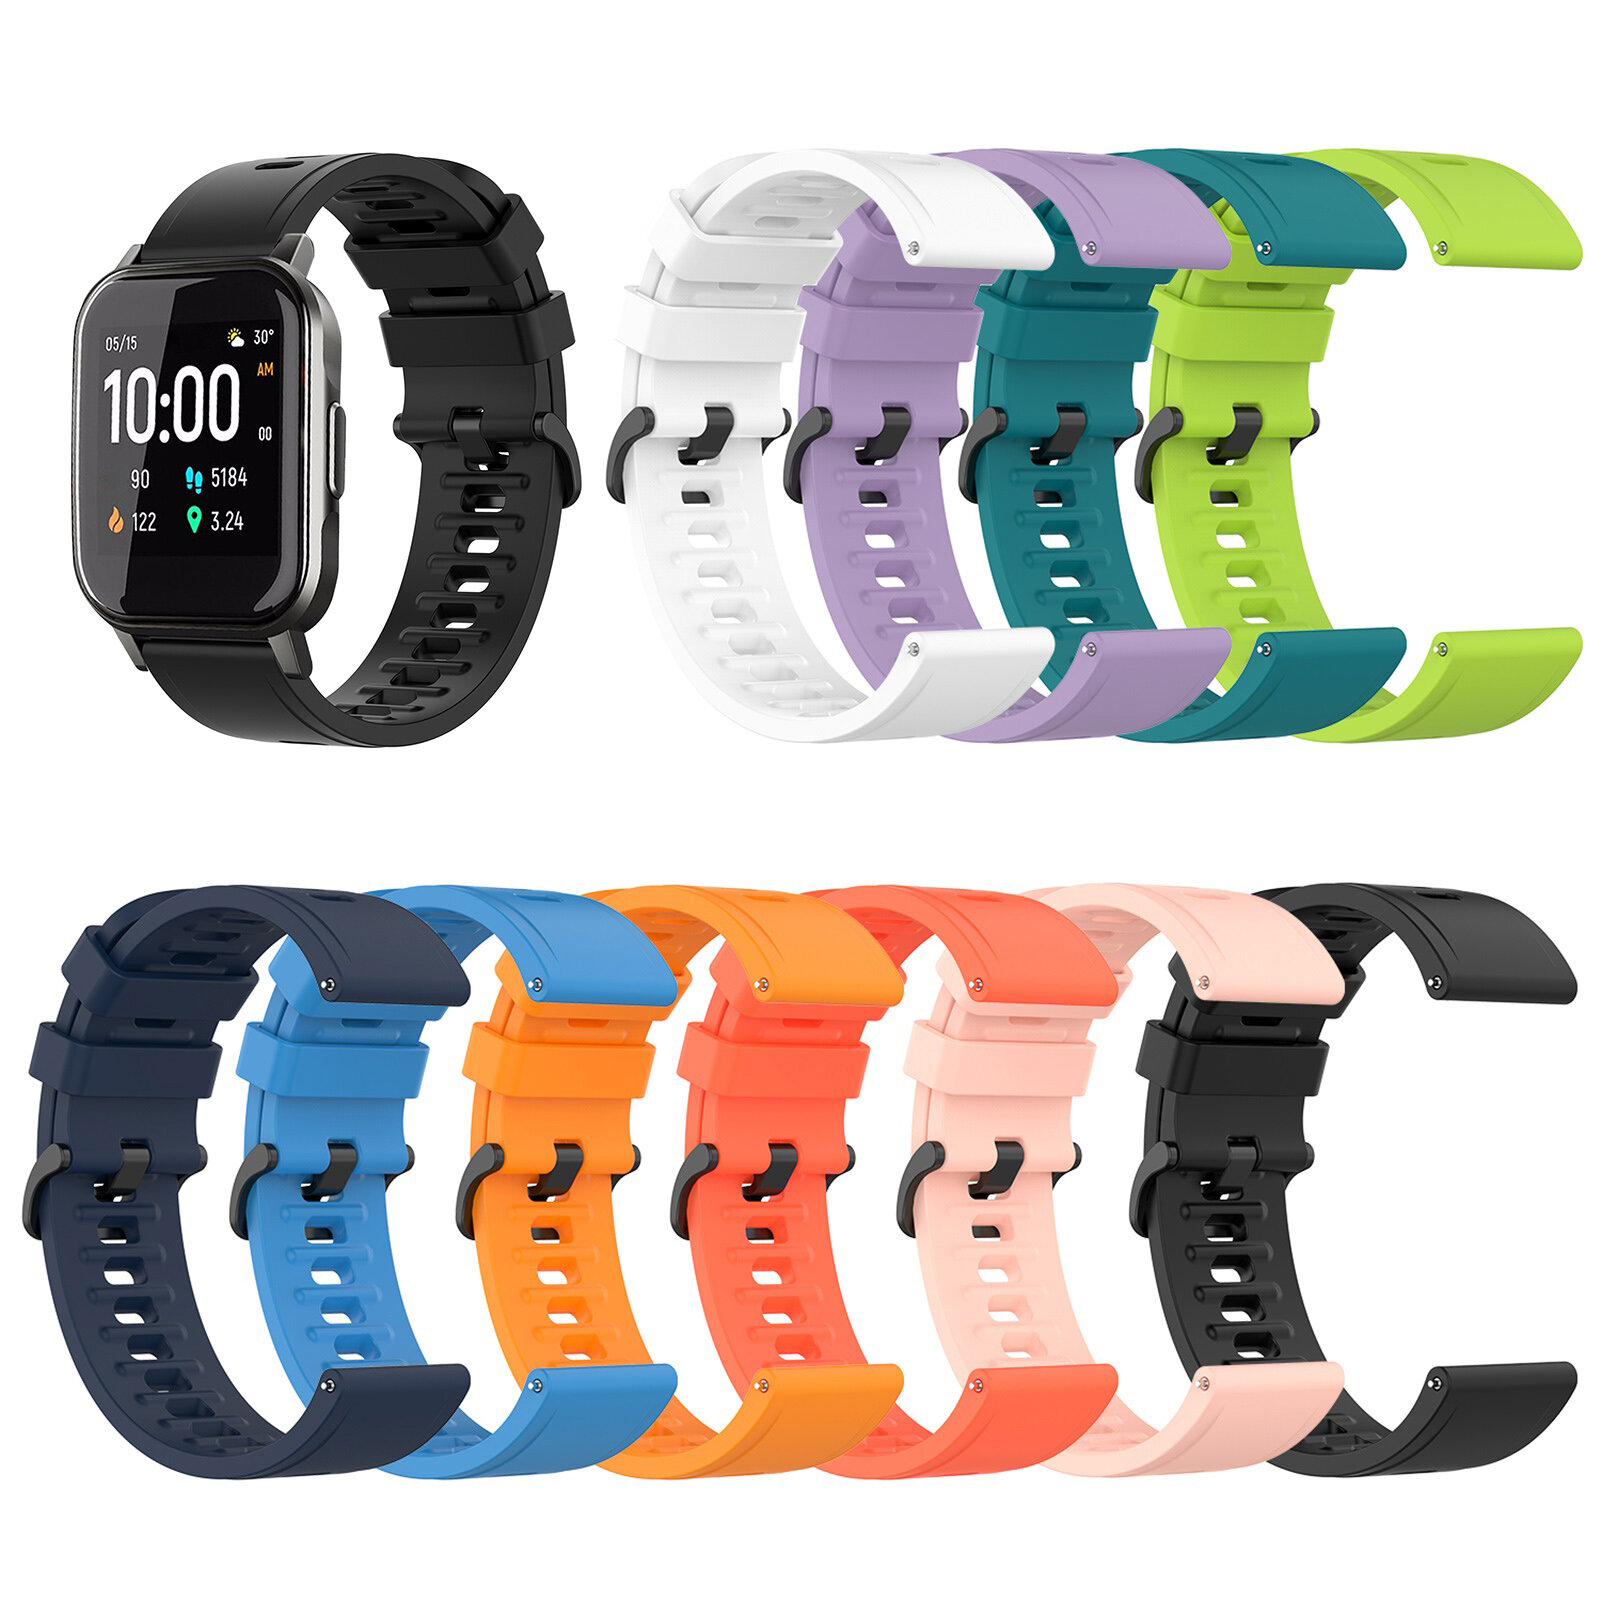 

Многоцветные умные часы Bakeey 20 мм Силиконовый Стандарты Запасной ремешок для Zeblaze GTR / Haylou LS02